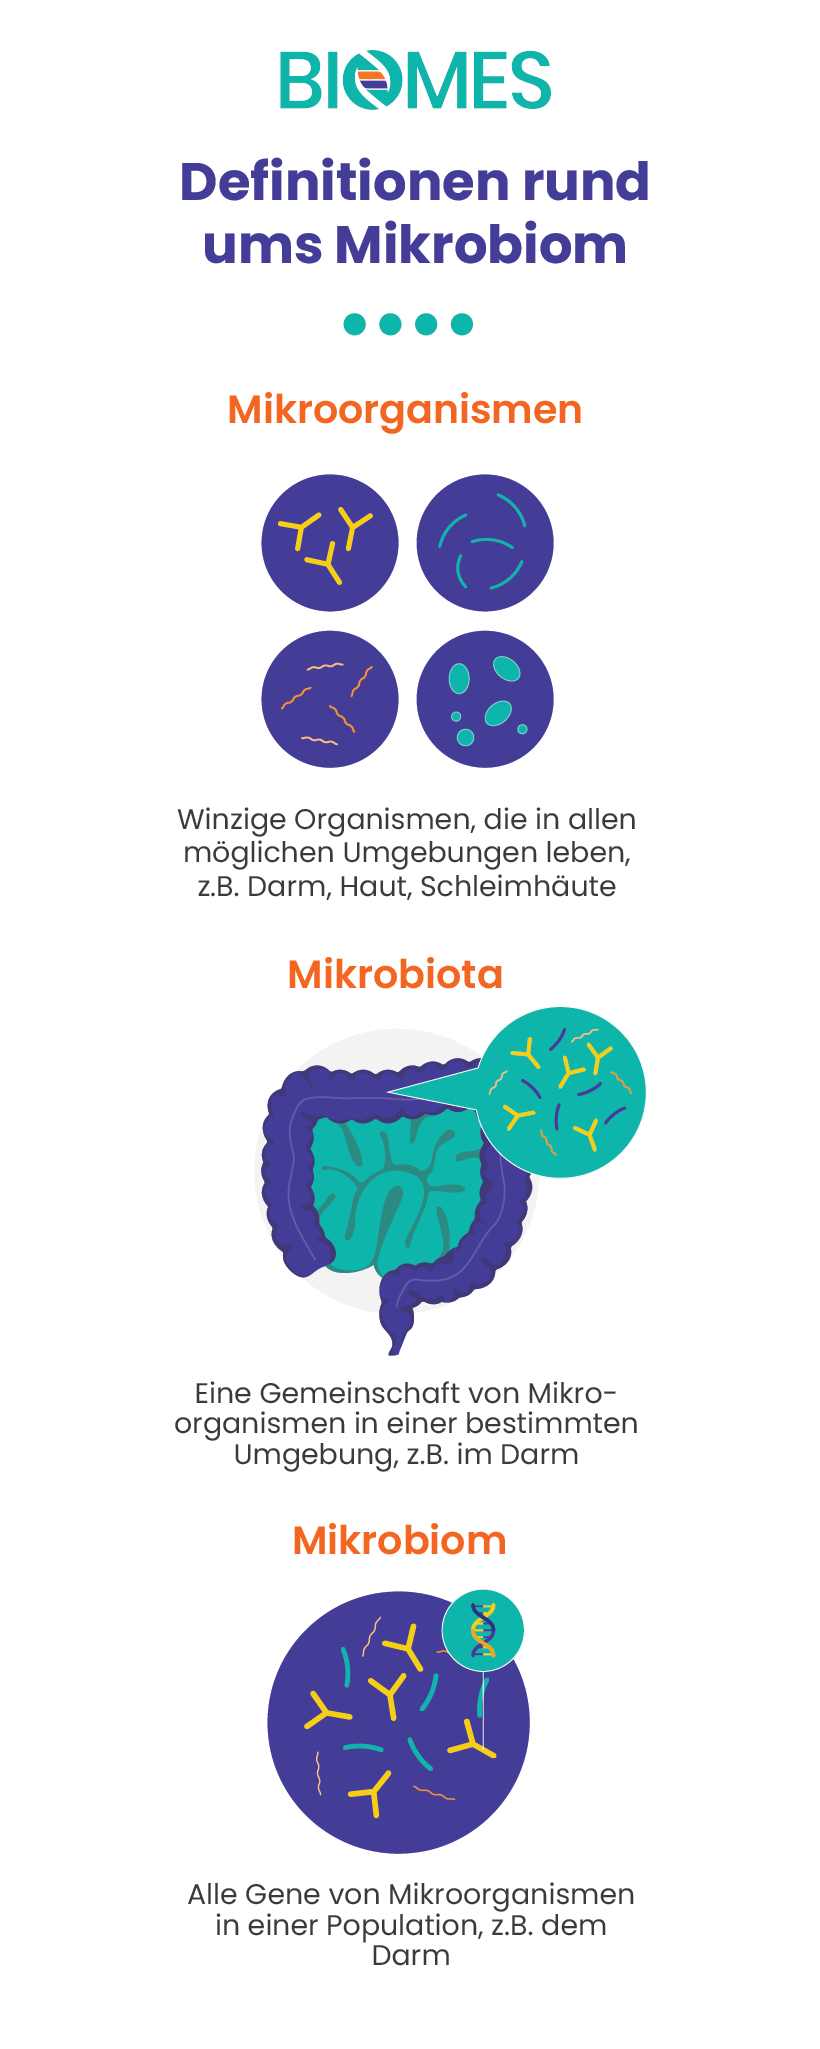 Definitionen rund ums Mikrobiom